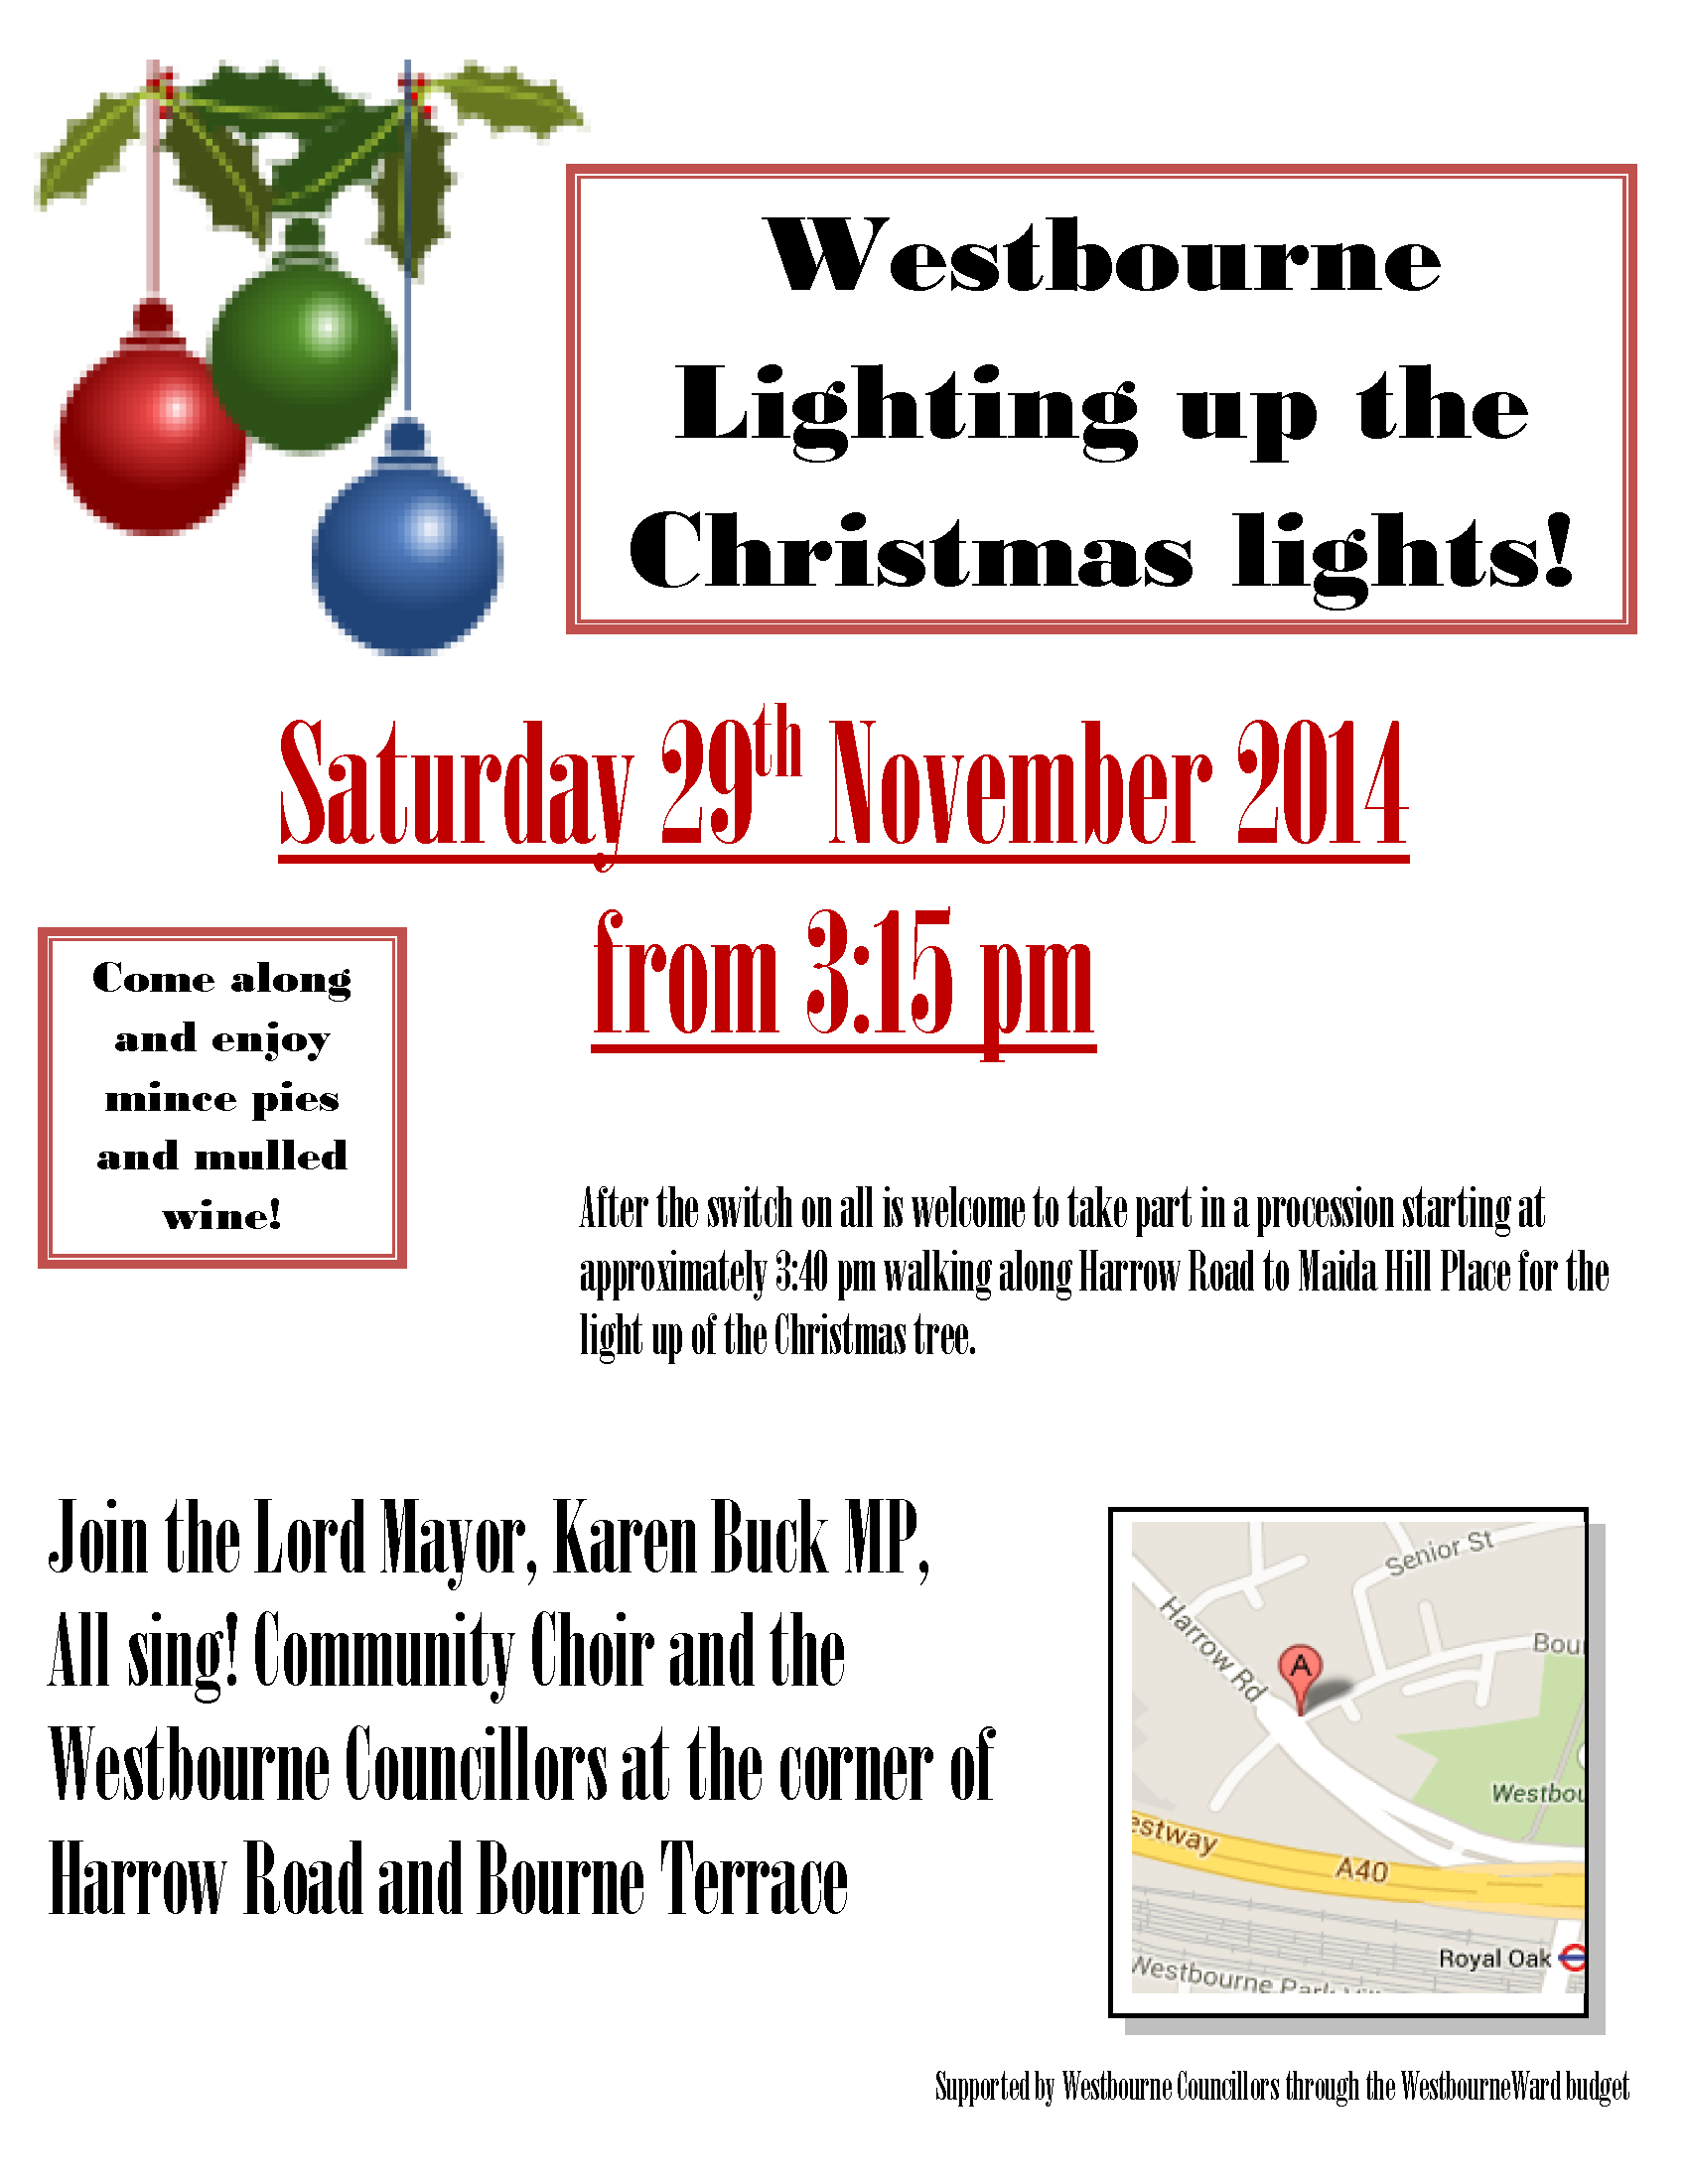 Westbourne Christmas Lights event - 29th Nov 2014